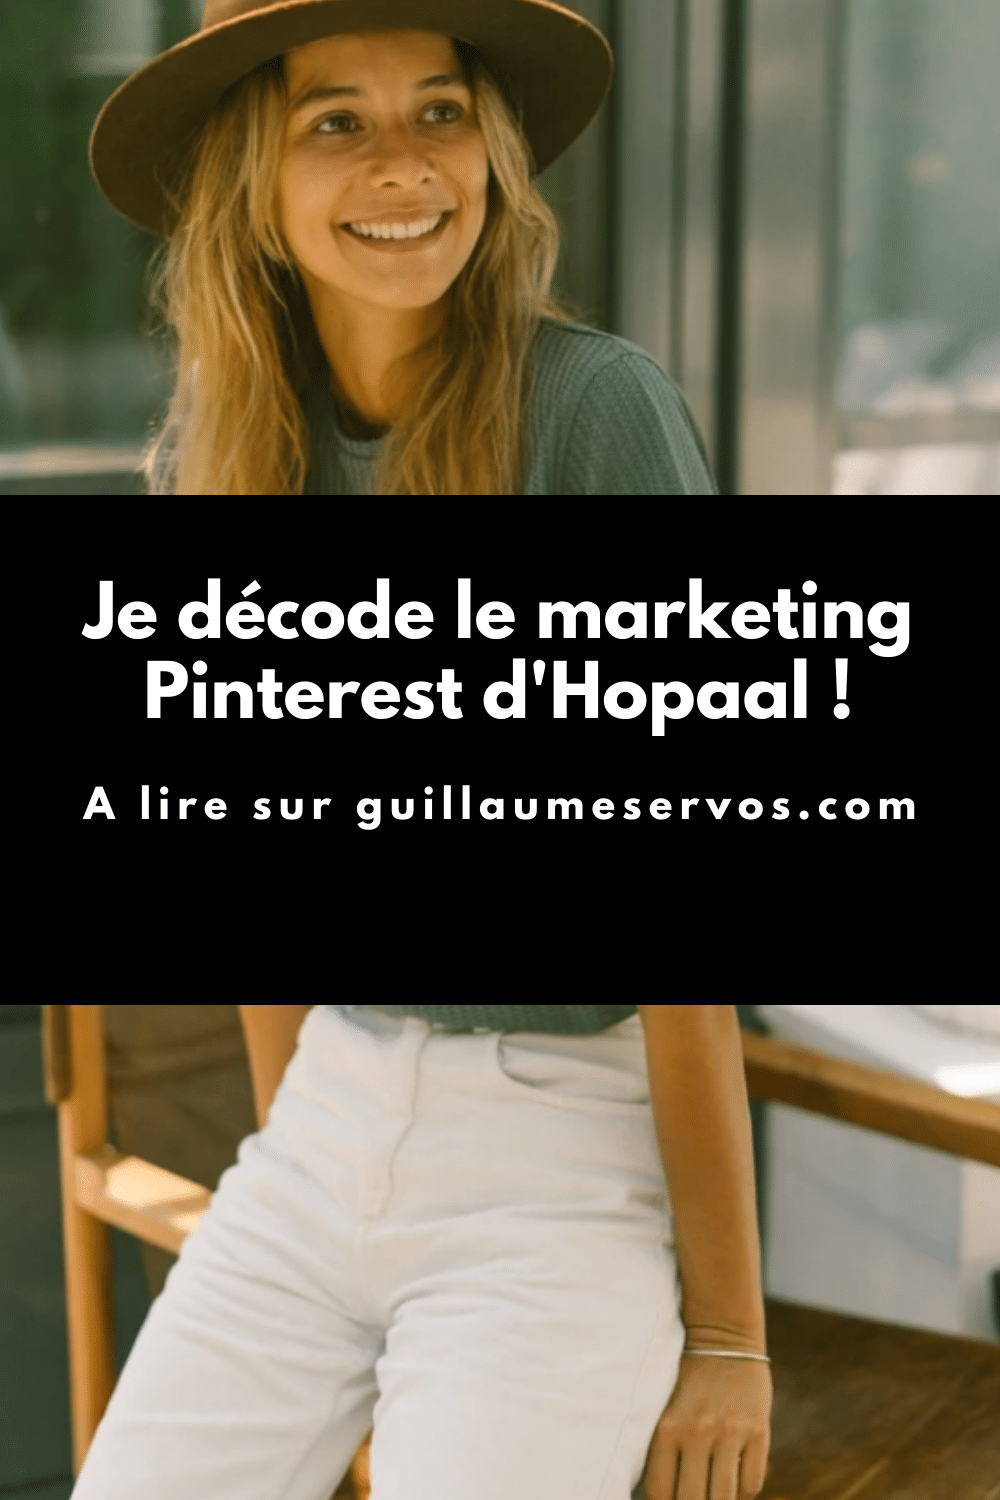 Comment Hopaal utilise Pinterest pour son business ? Je décode le marketing Pinterest de la marque qui dessine et conçoit des vêtements réalisés à partir de matières recyclées.